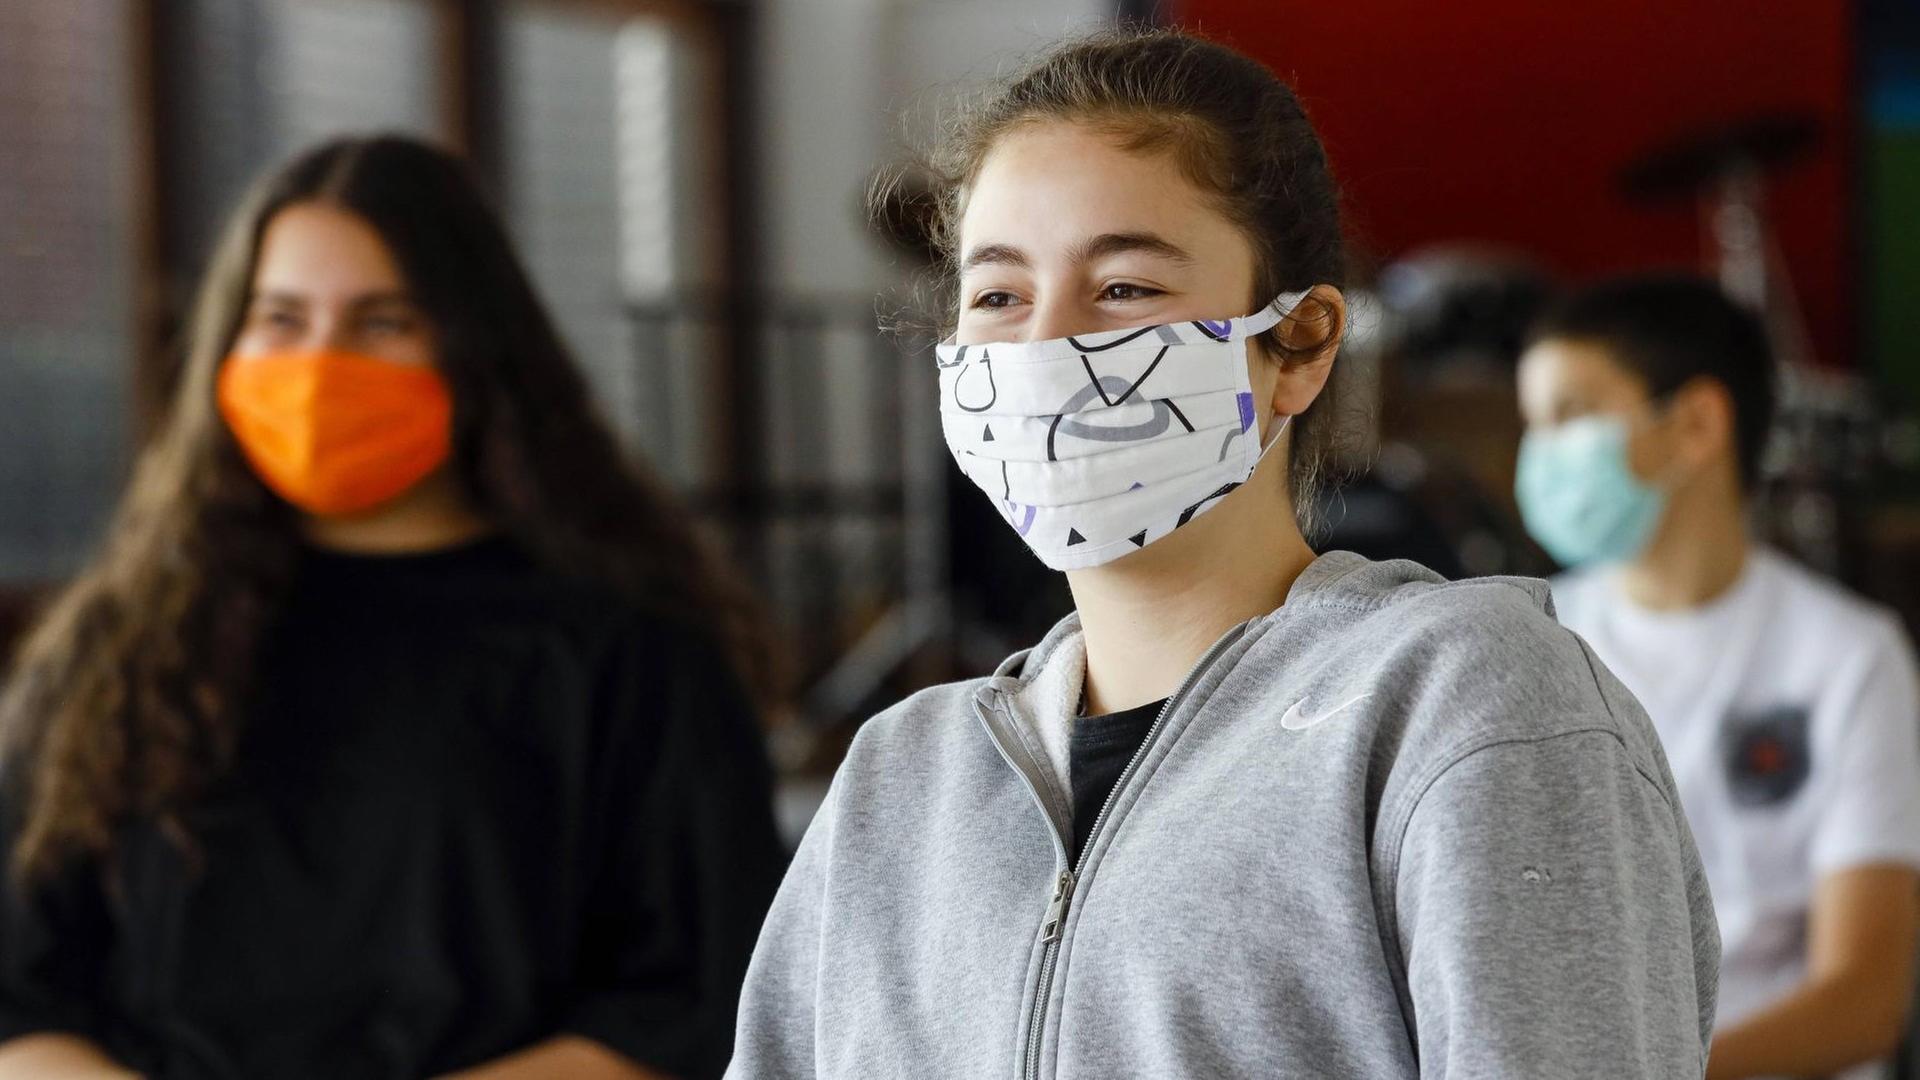 Realschule Benzenberg anlaesslich der Wiederaufnahme des Schulbetriebs unter Auflagen des Corona-Infektionsschutzes in Zeiten der Corona Pandemie, Schuelerinnen tragen Masken beim Unterricht im Musikraum.